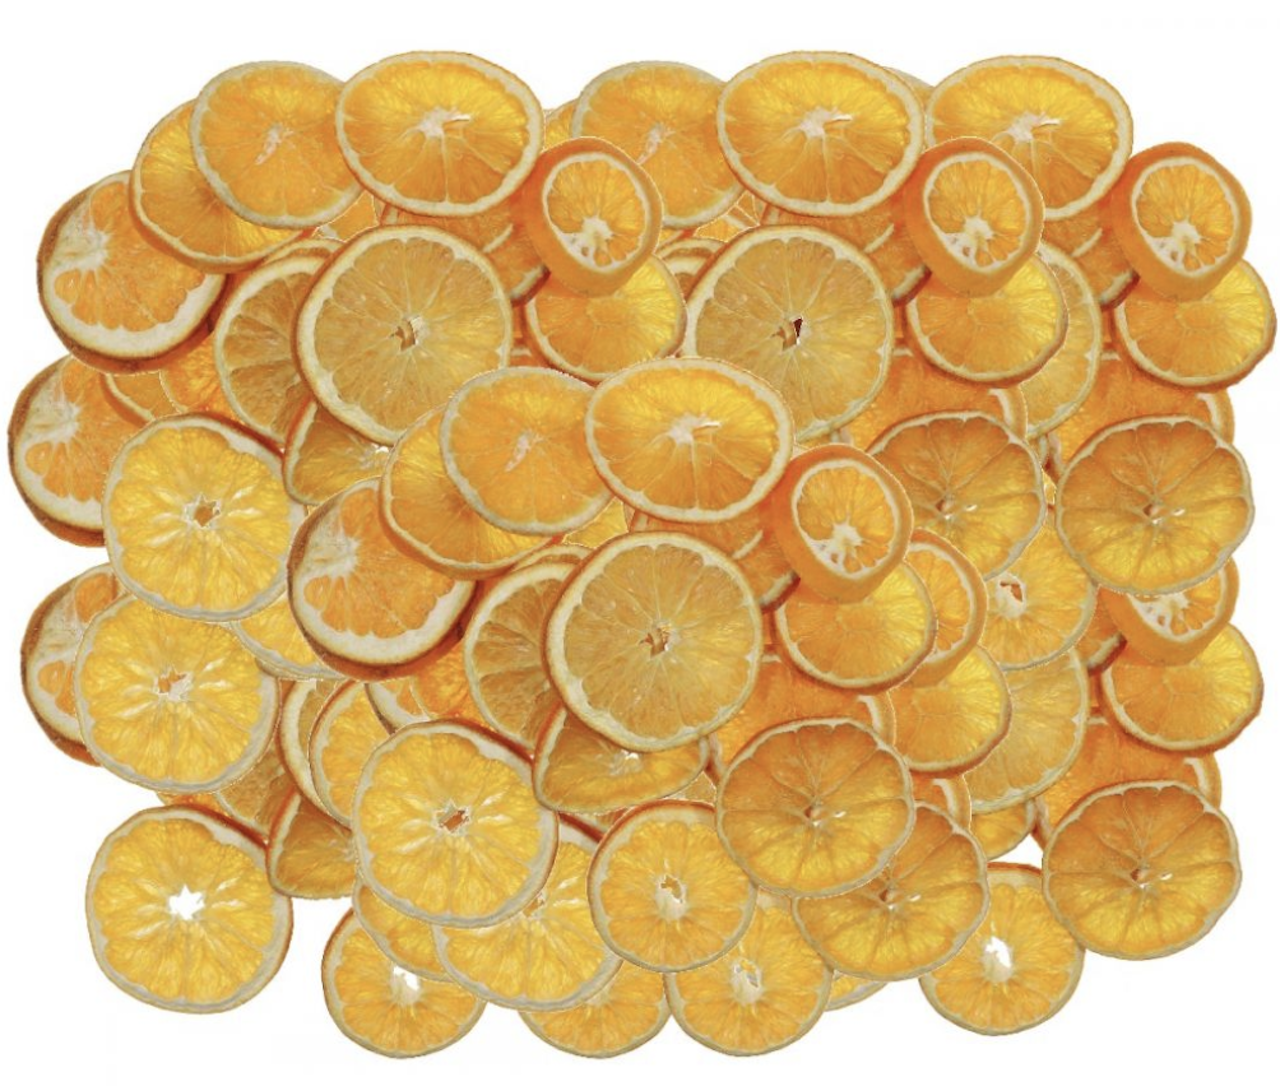 Puteți prepara și voi, acasă, aceste delicioase portocale confiate